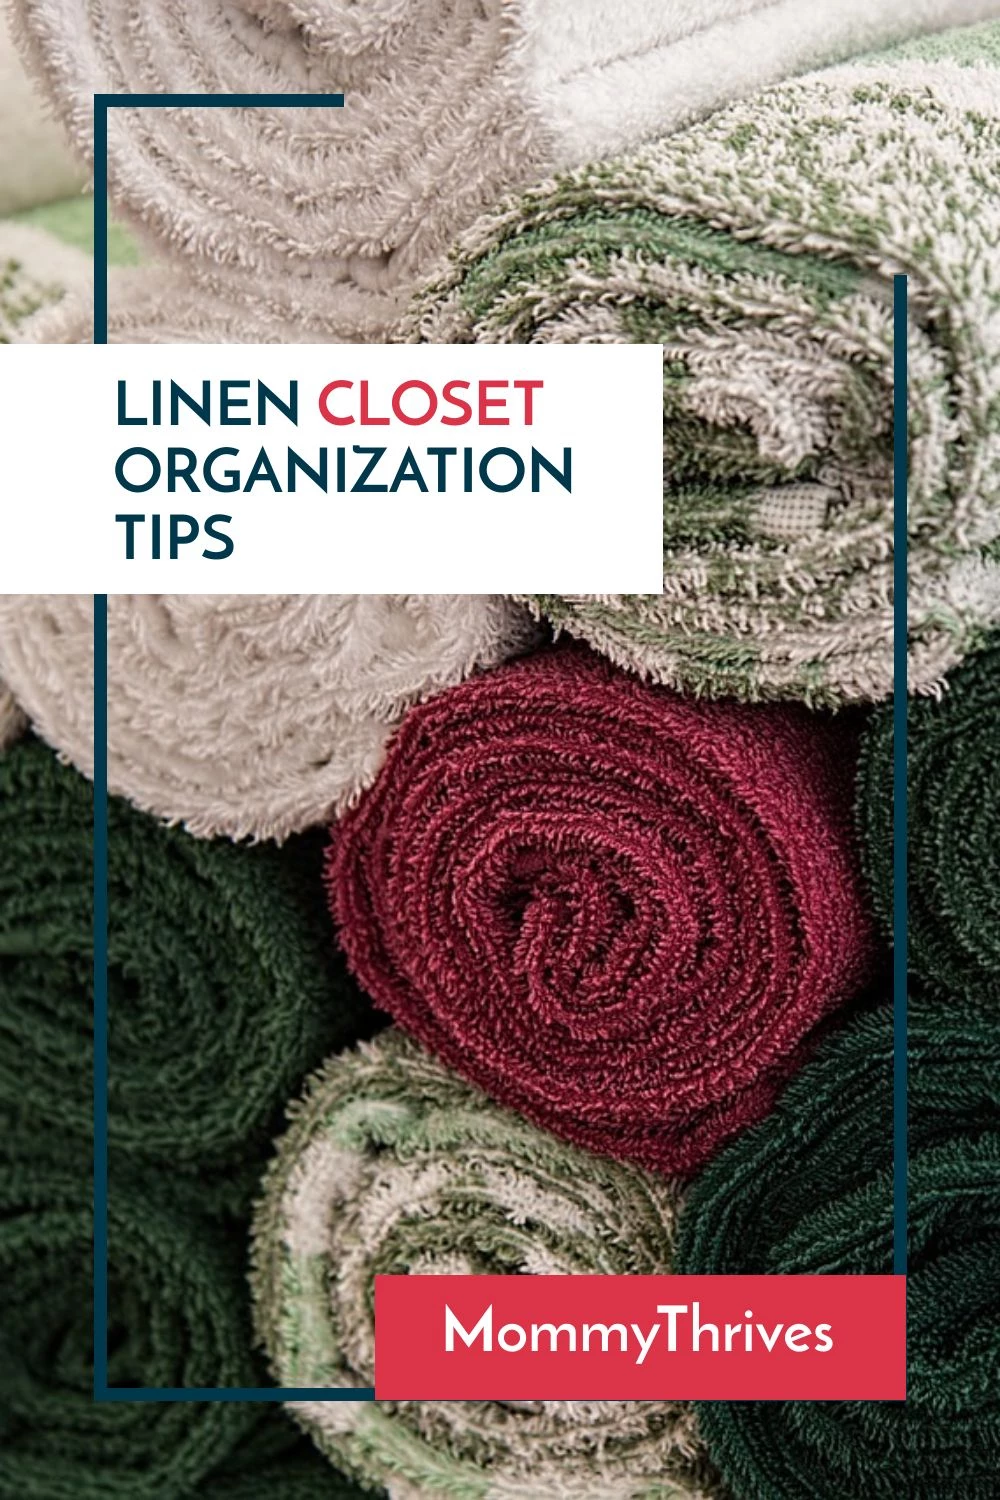 https://www.mommythrives.com/wp-content/uploads/2018/03/How-To-Organize-A-Linen-Closet-Linen-Closet-Organization-Tips-Small-Linen-Closet-Organization-Ideas.webp